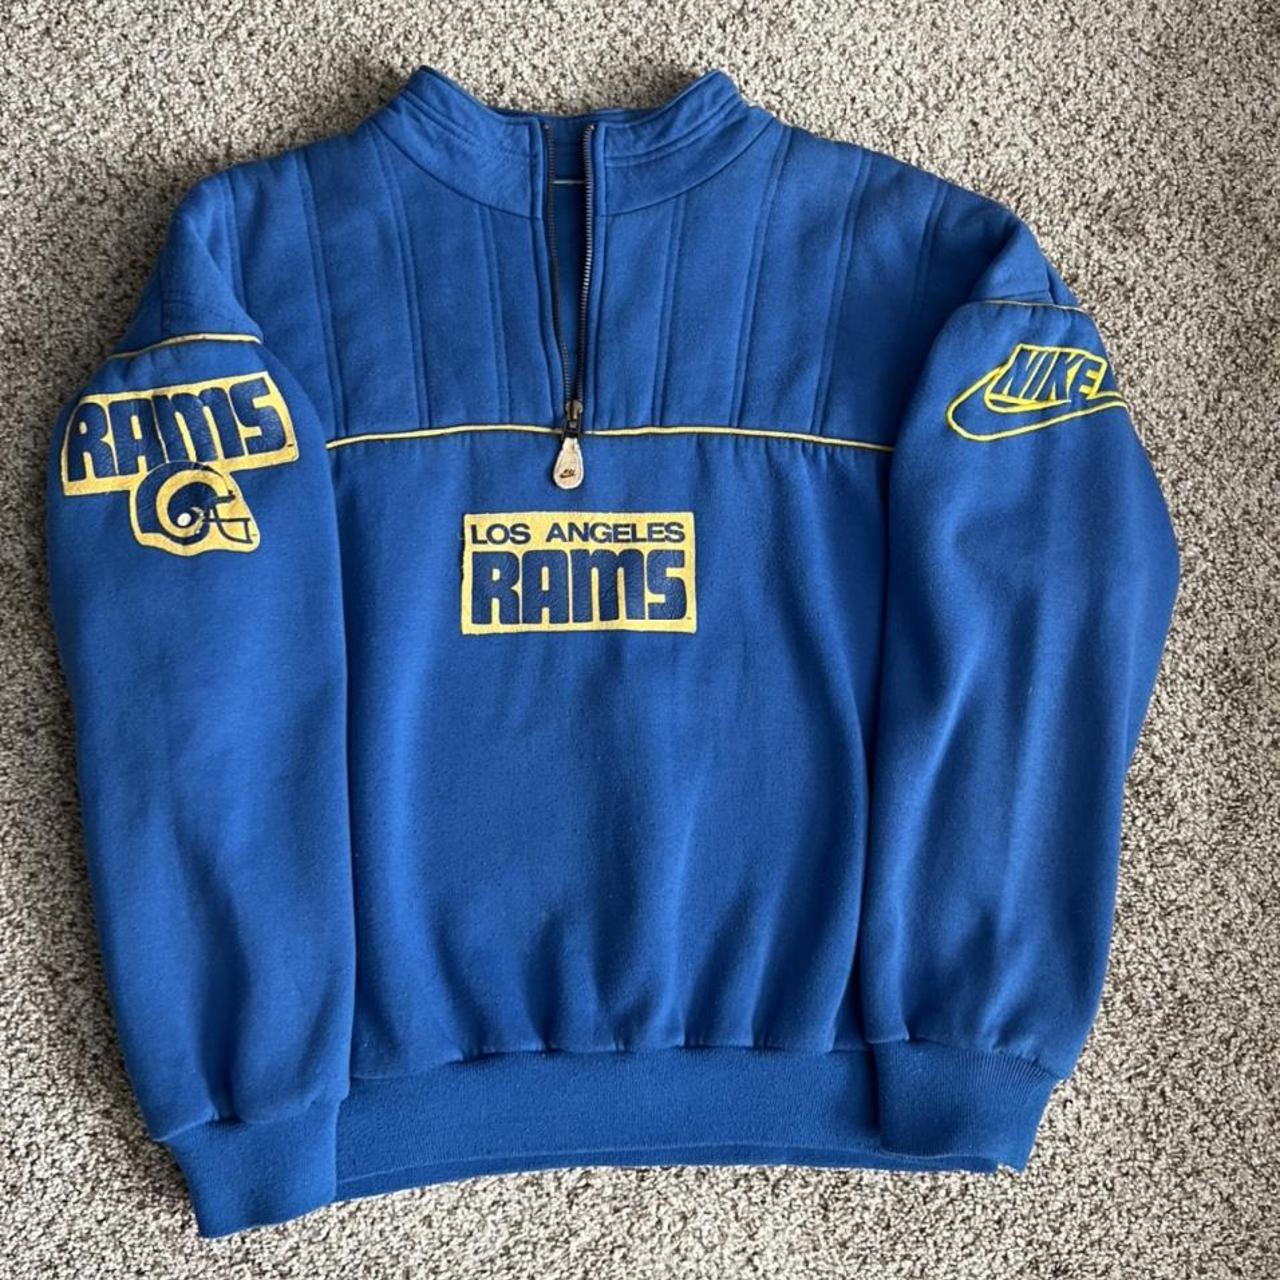 Vintage 80’s Nike Los Angeles Rams NFL quarter zip... - Depop